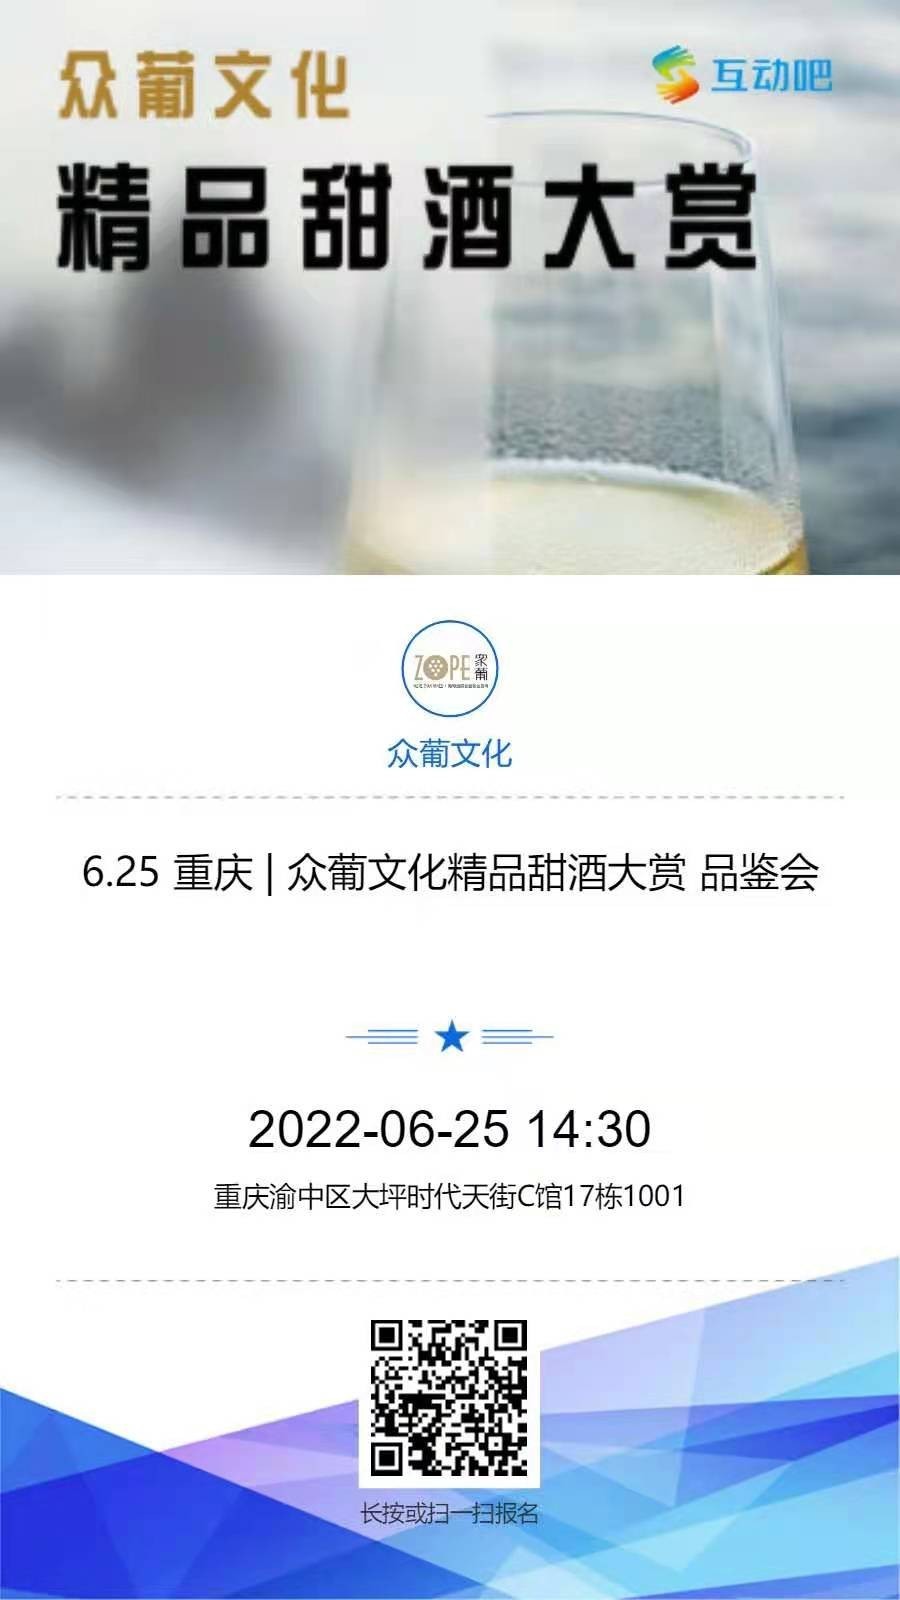 6.25 重庆 | 众葡文化精品甜酒大赏 品鉴会